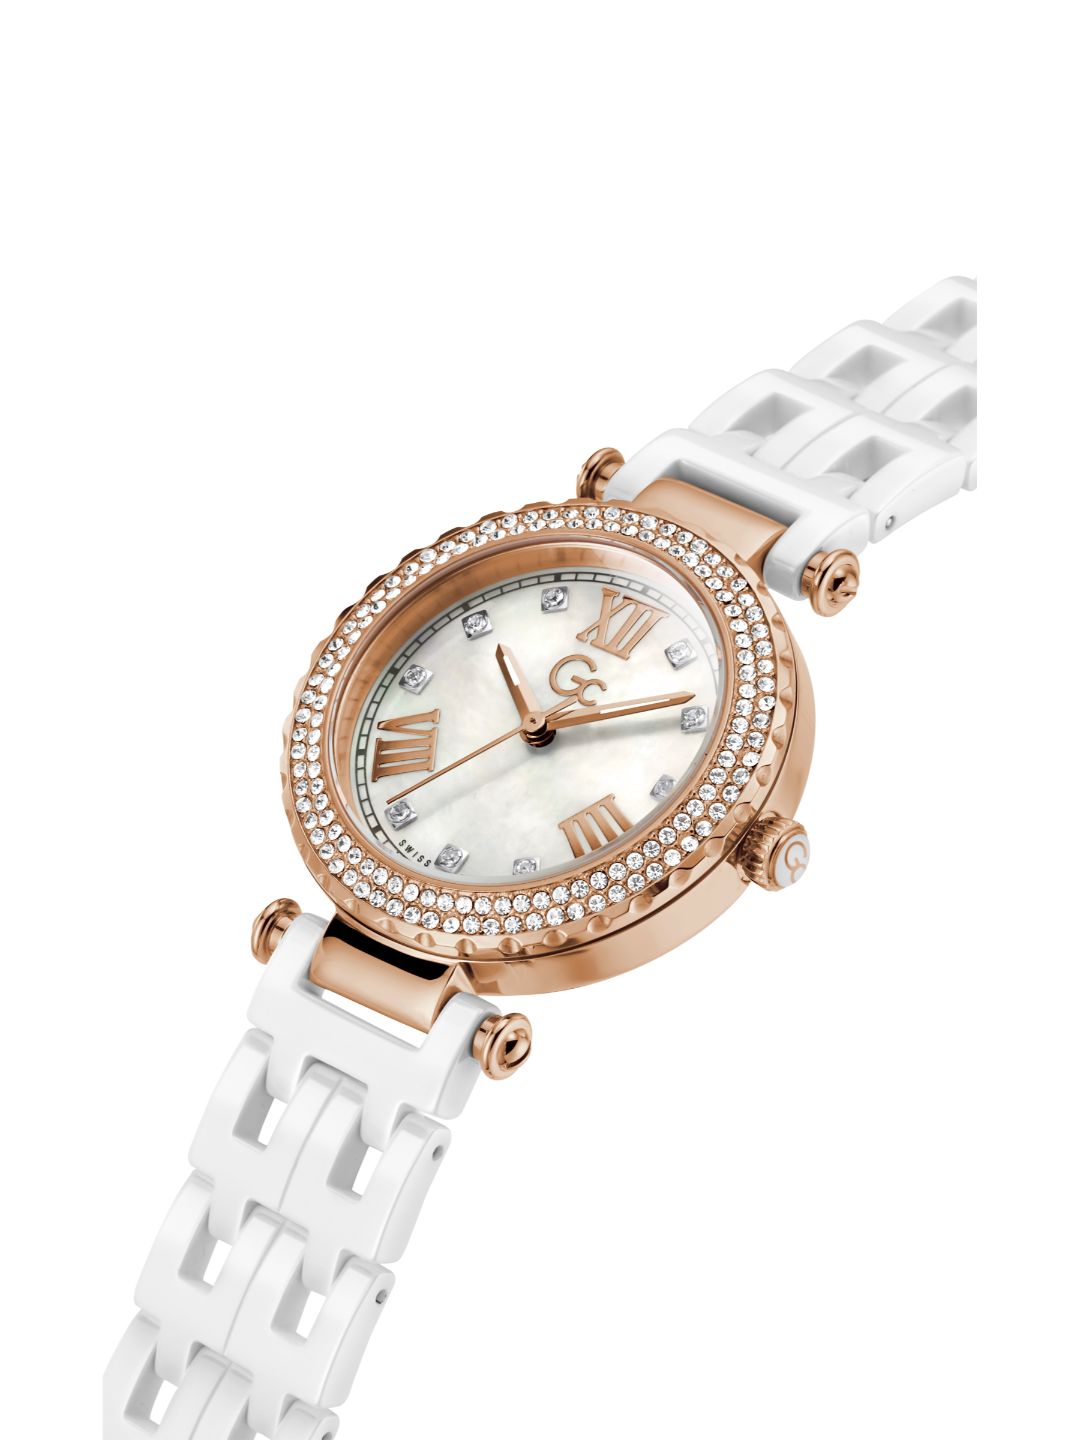 GC Women White Wrist Watch - Y66006L1MF